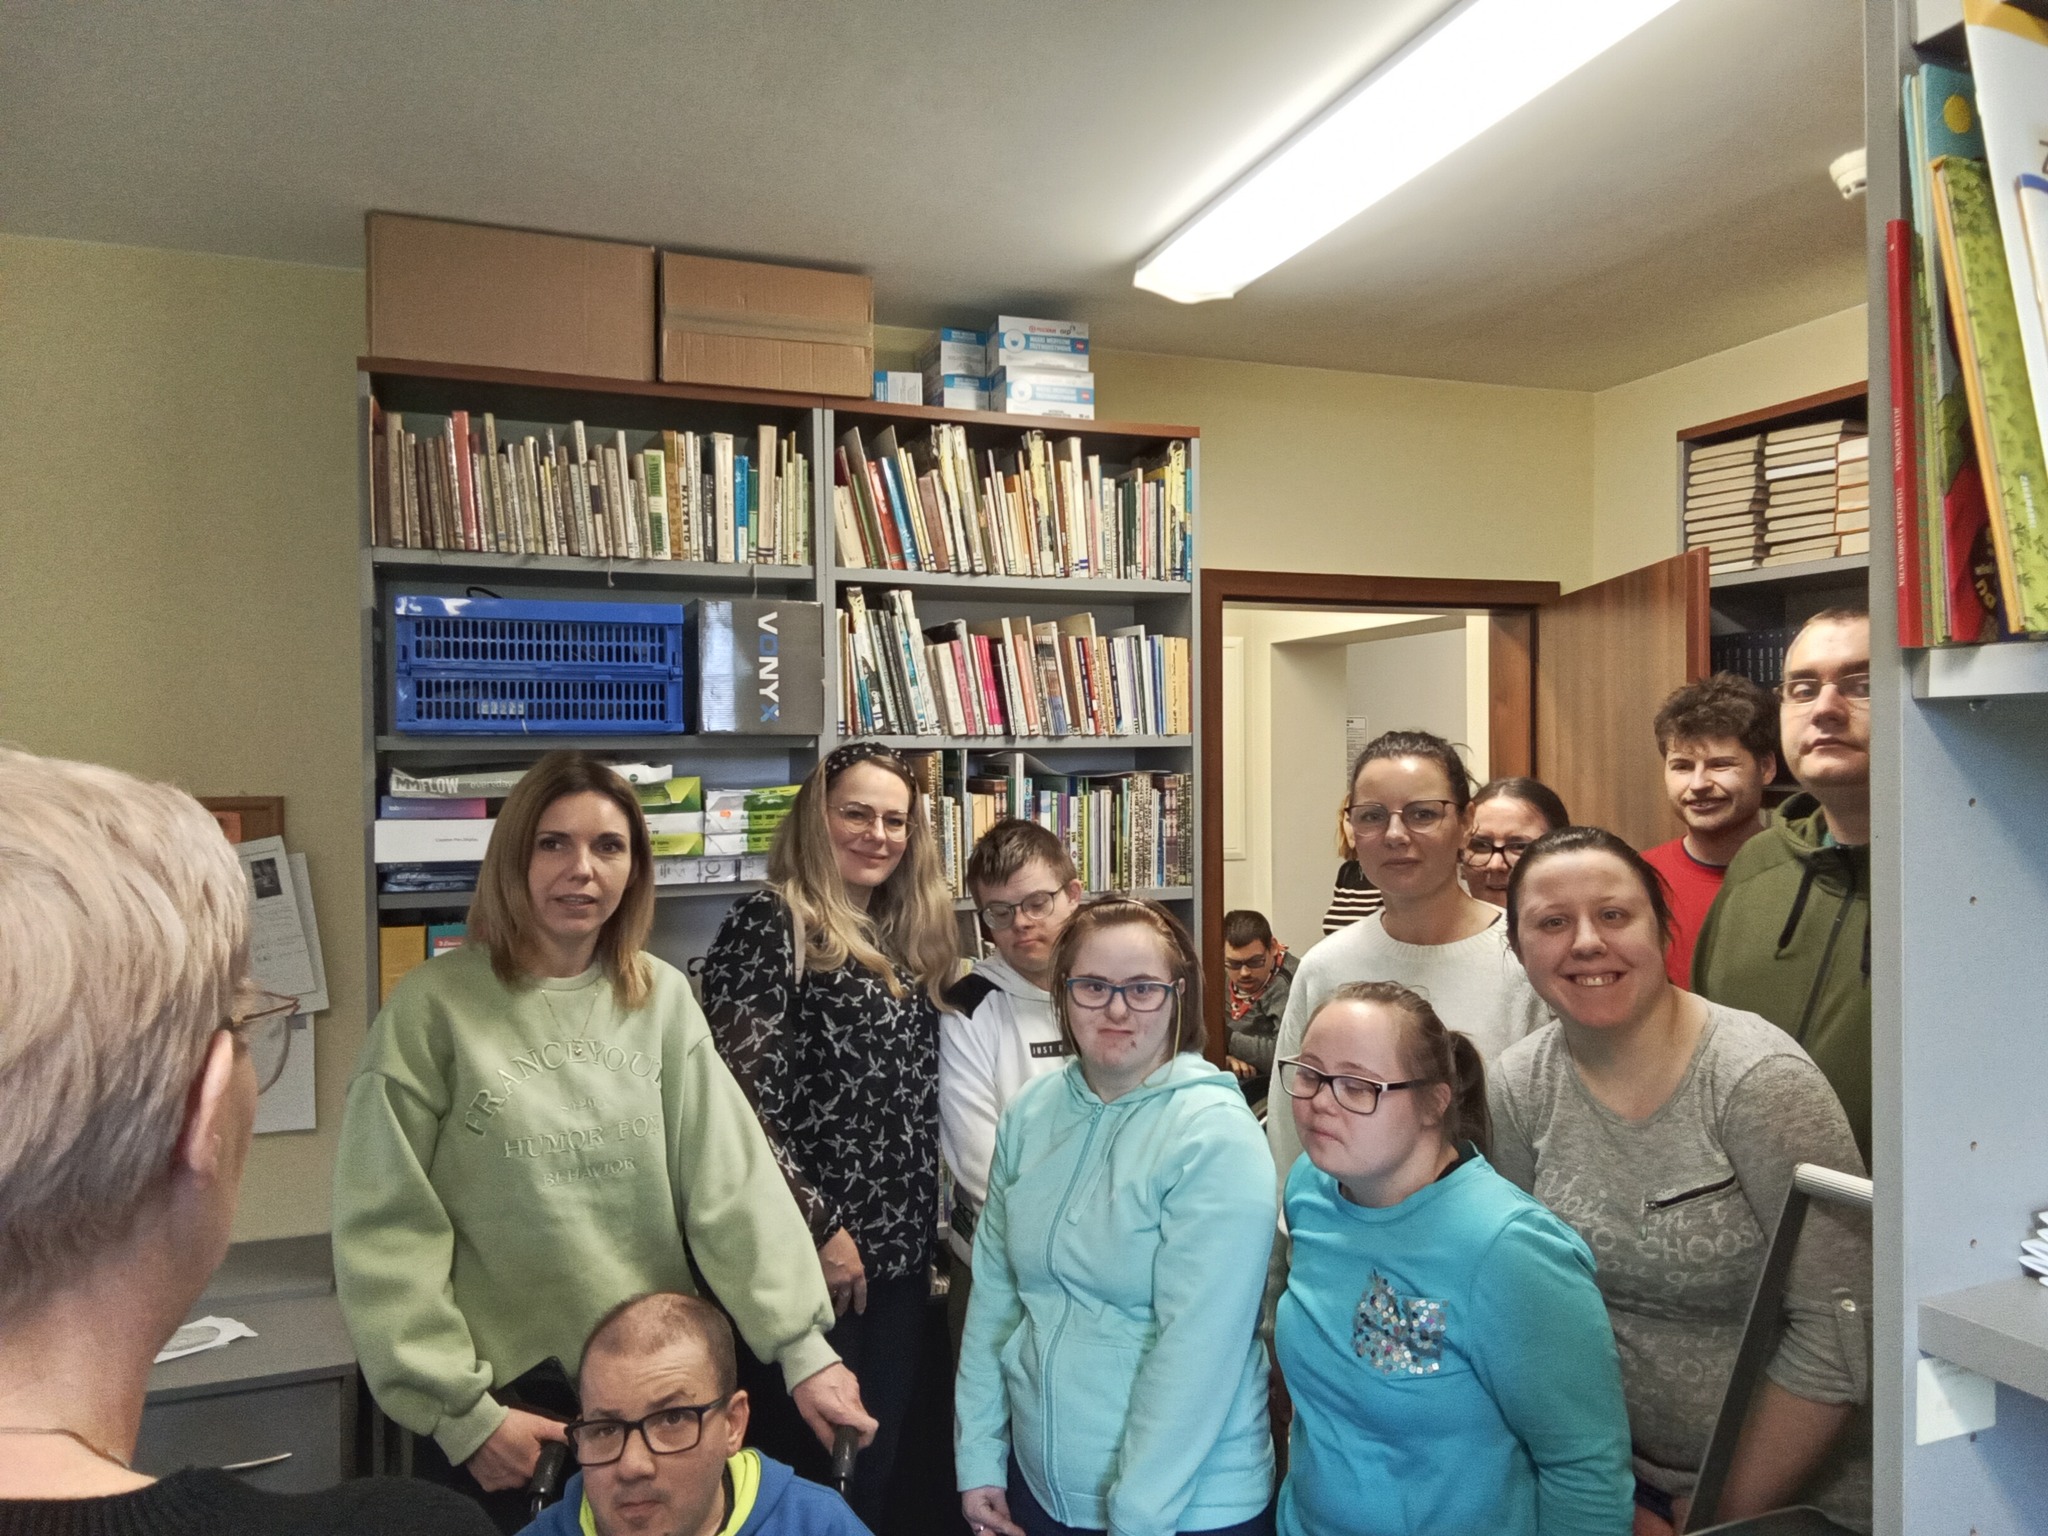 Uczestnicy Programu „Rehabilitacja 25+”  biorą udział w lekcji bibliotecznej — gromadzenie